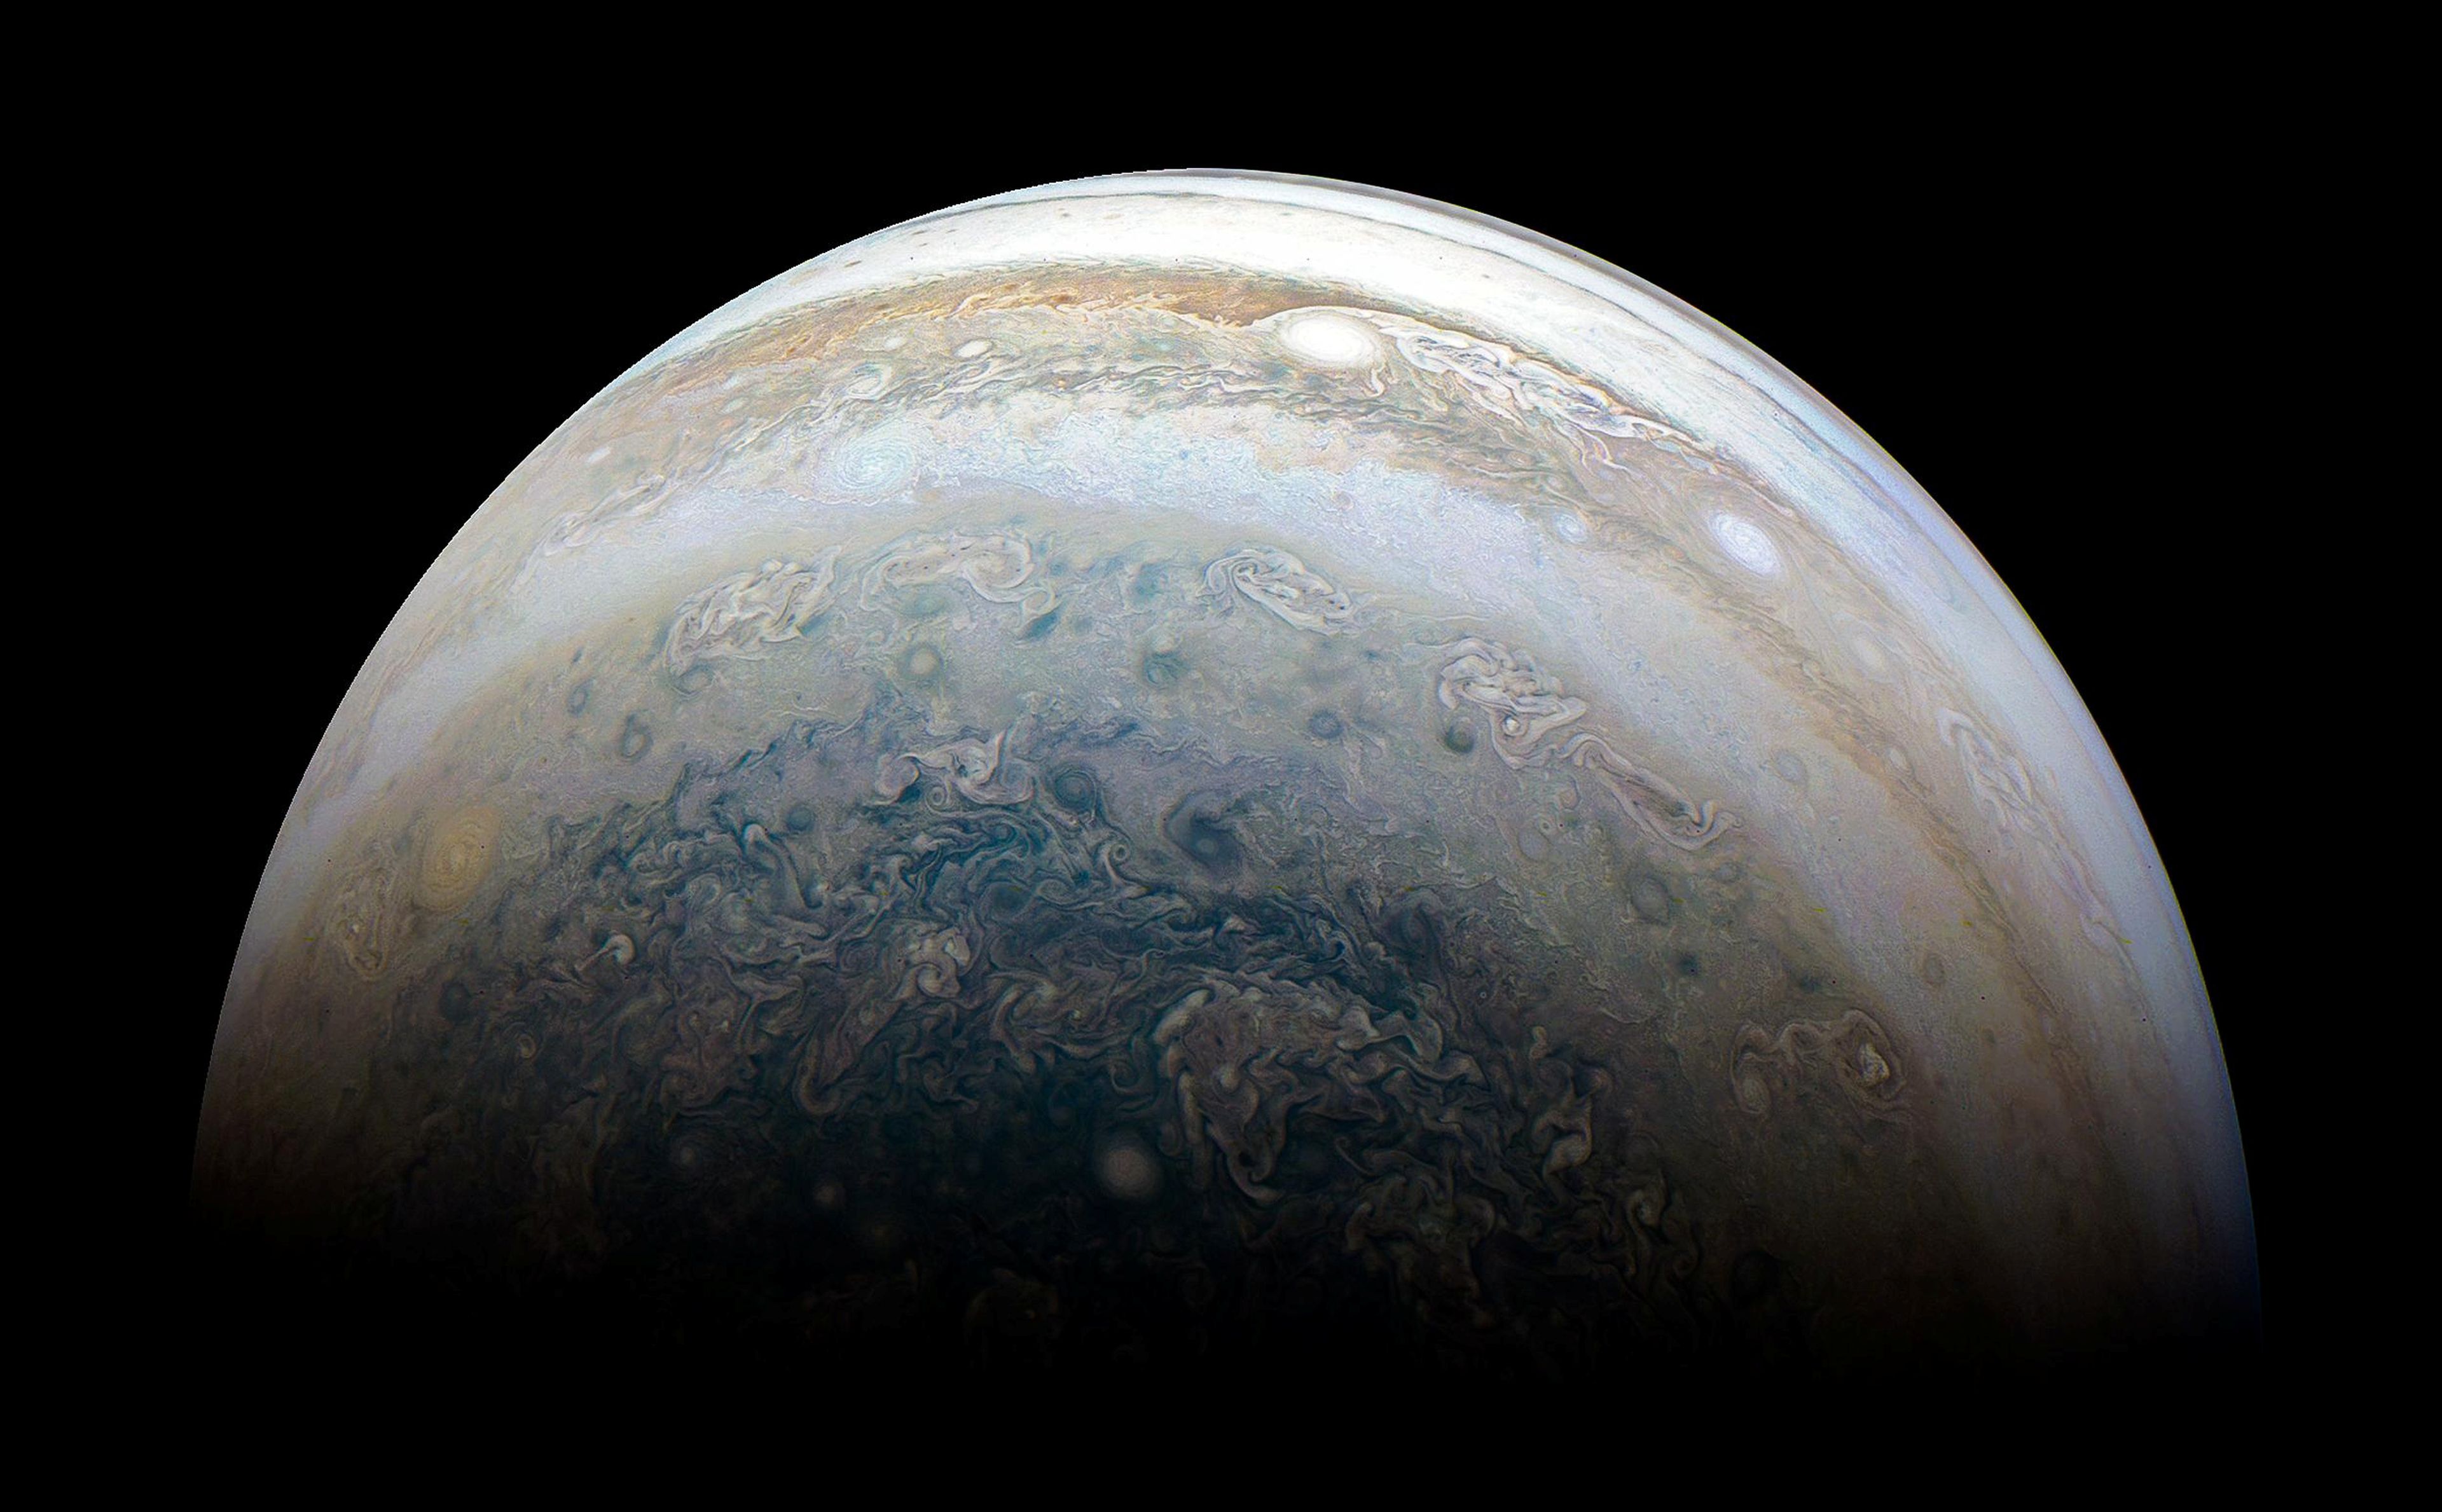 Imagen de Júpiter tomada por la sonda espacial Juno de la NASA en 2018.